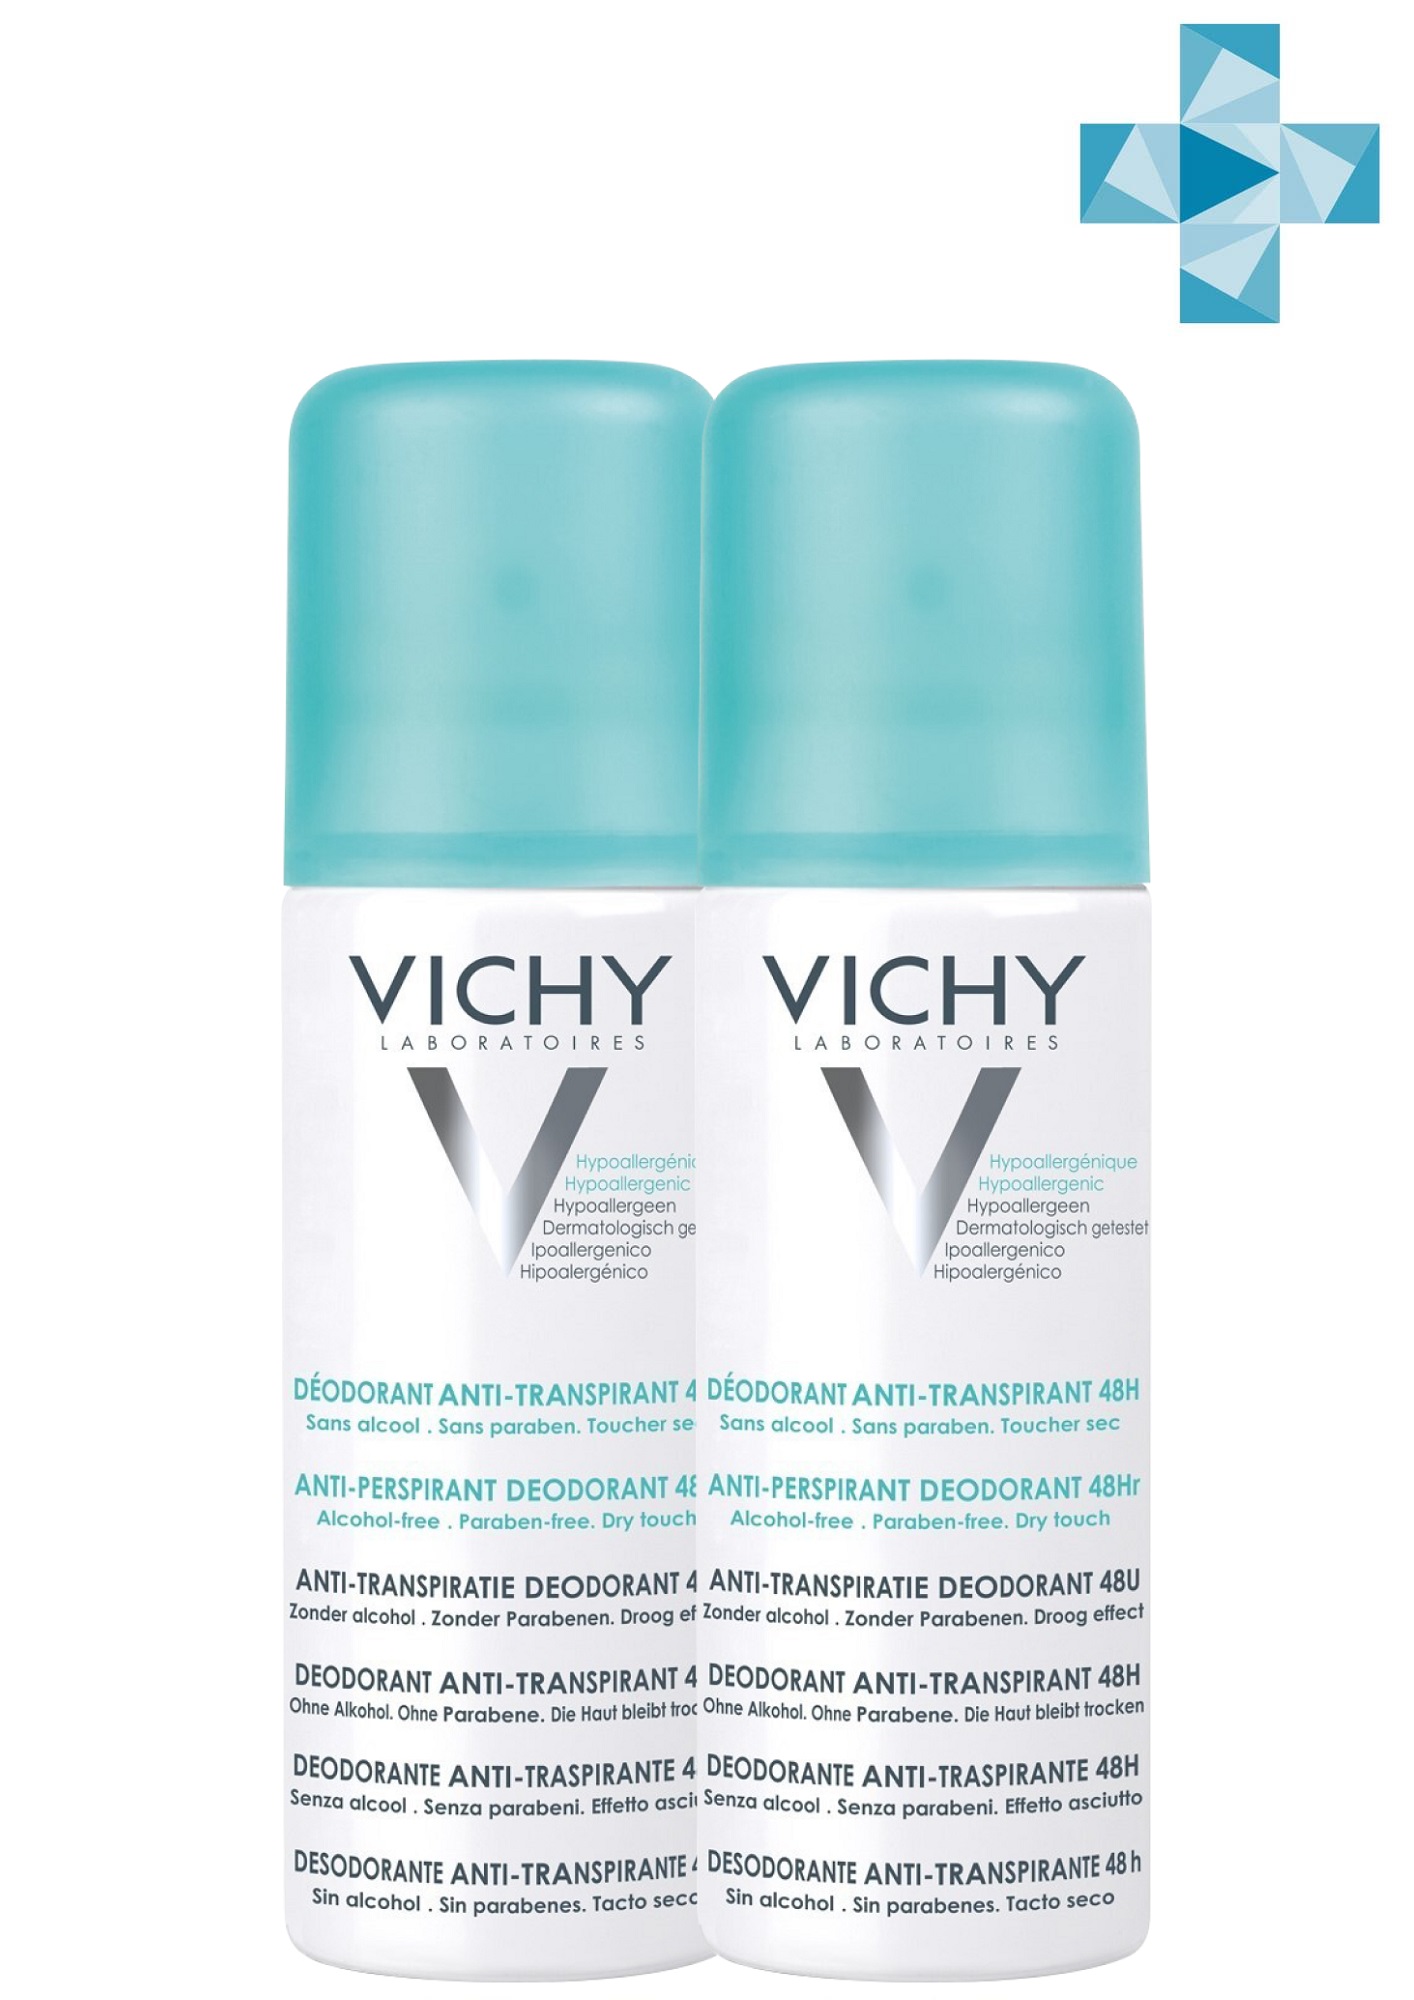 Vichy Комплект Дезодорант-аэрозоль регулирующий избыточное потоотделение 48 часов, 2 х 125 мл (Vichy, Deodorant) шариковый дезодорант регулирующий избыточное потоотделение vichy 48h 50 мл